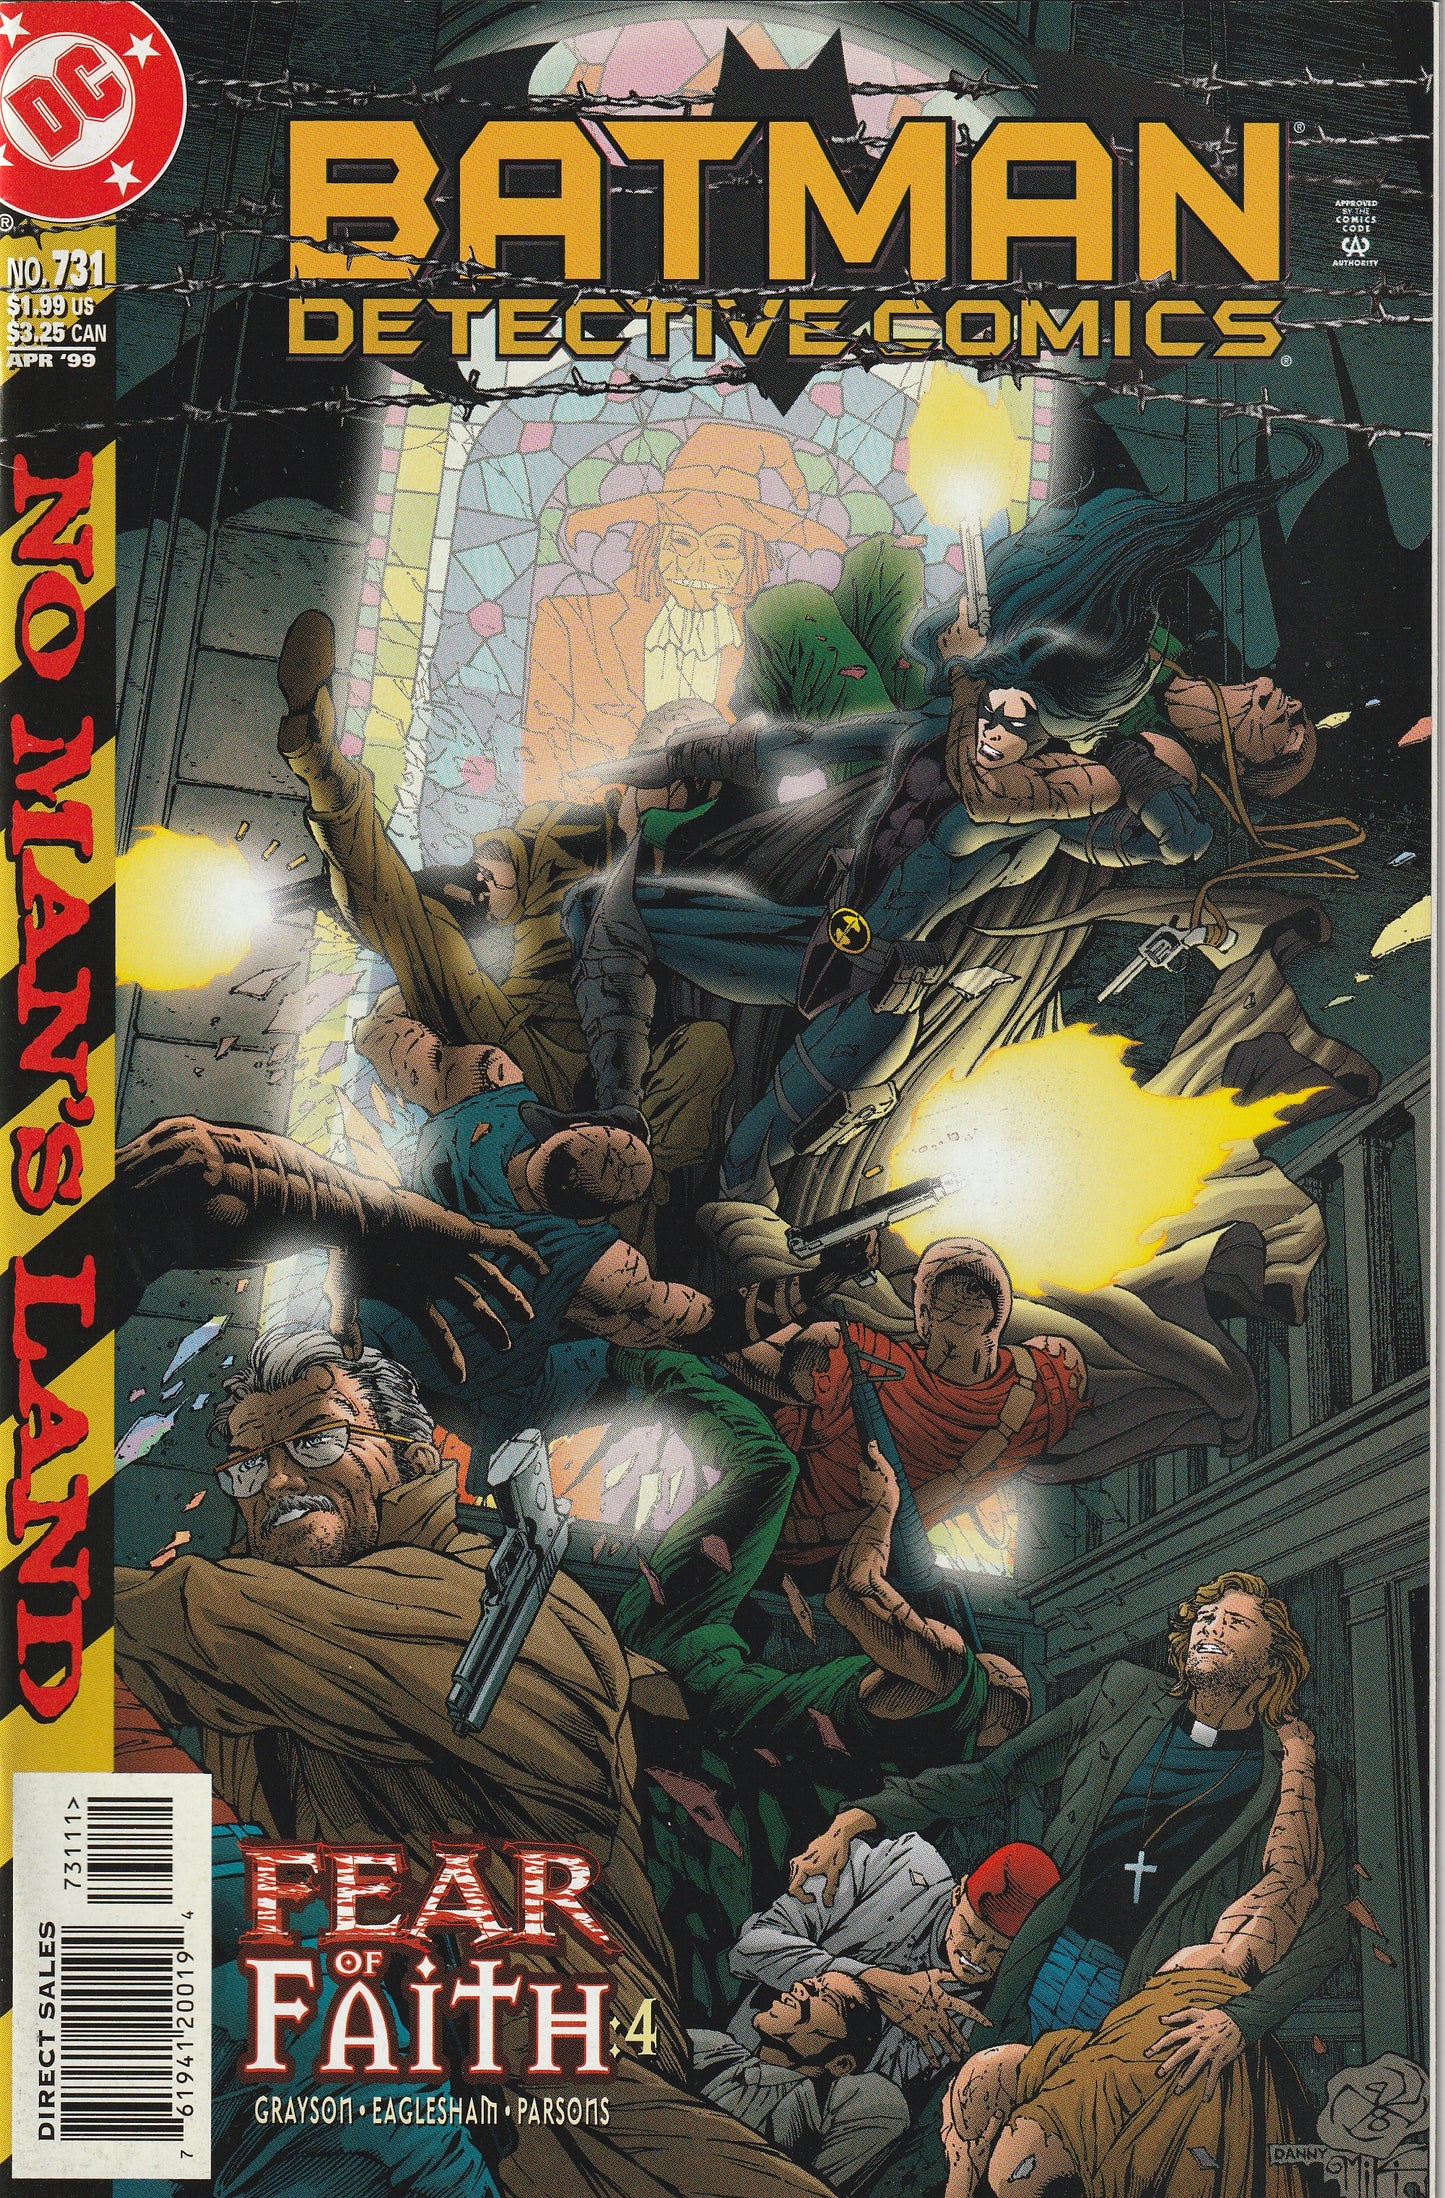 Detective Comics #731 (1999) - No Man's Land